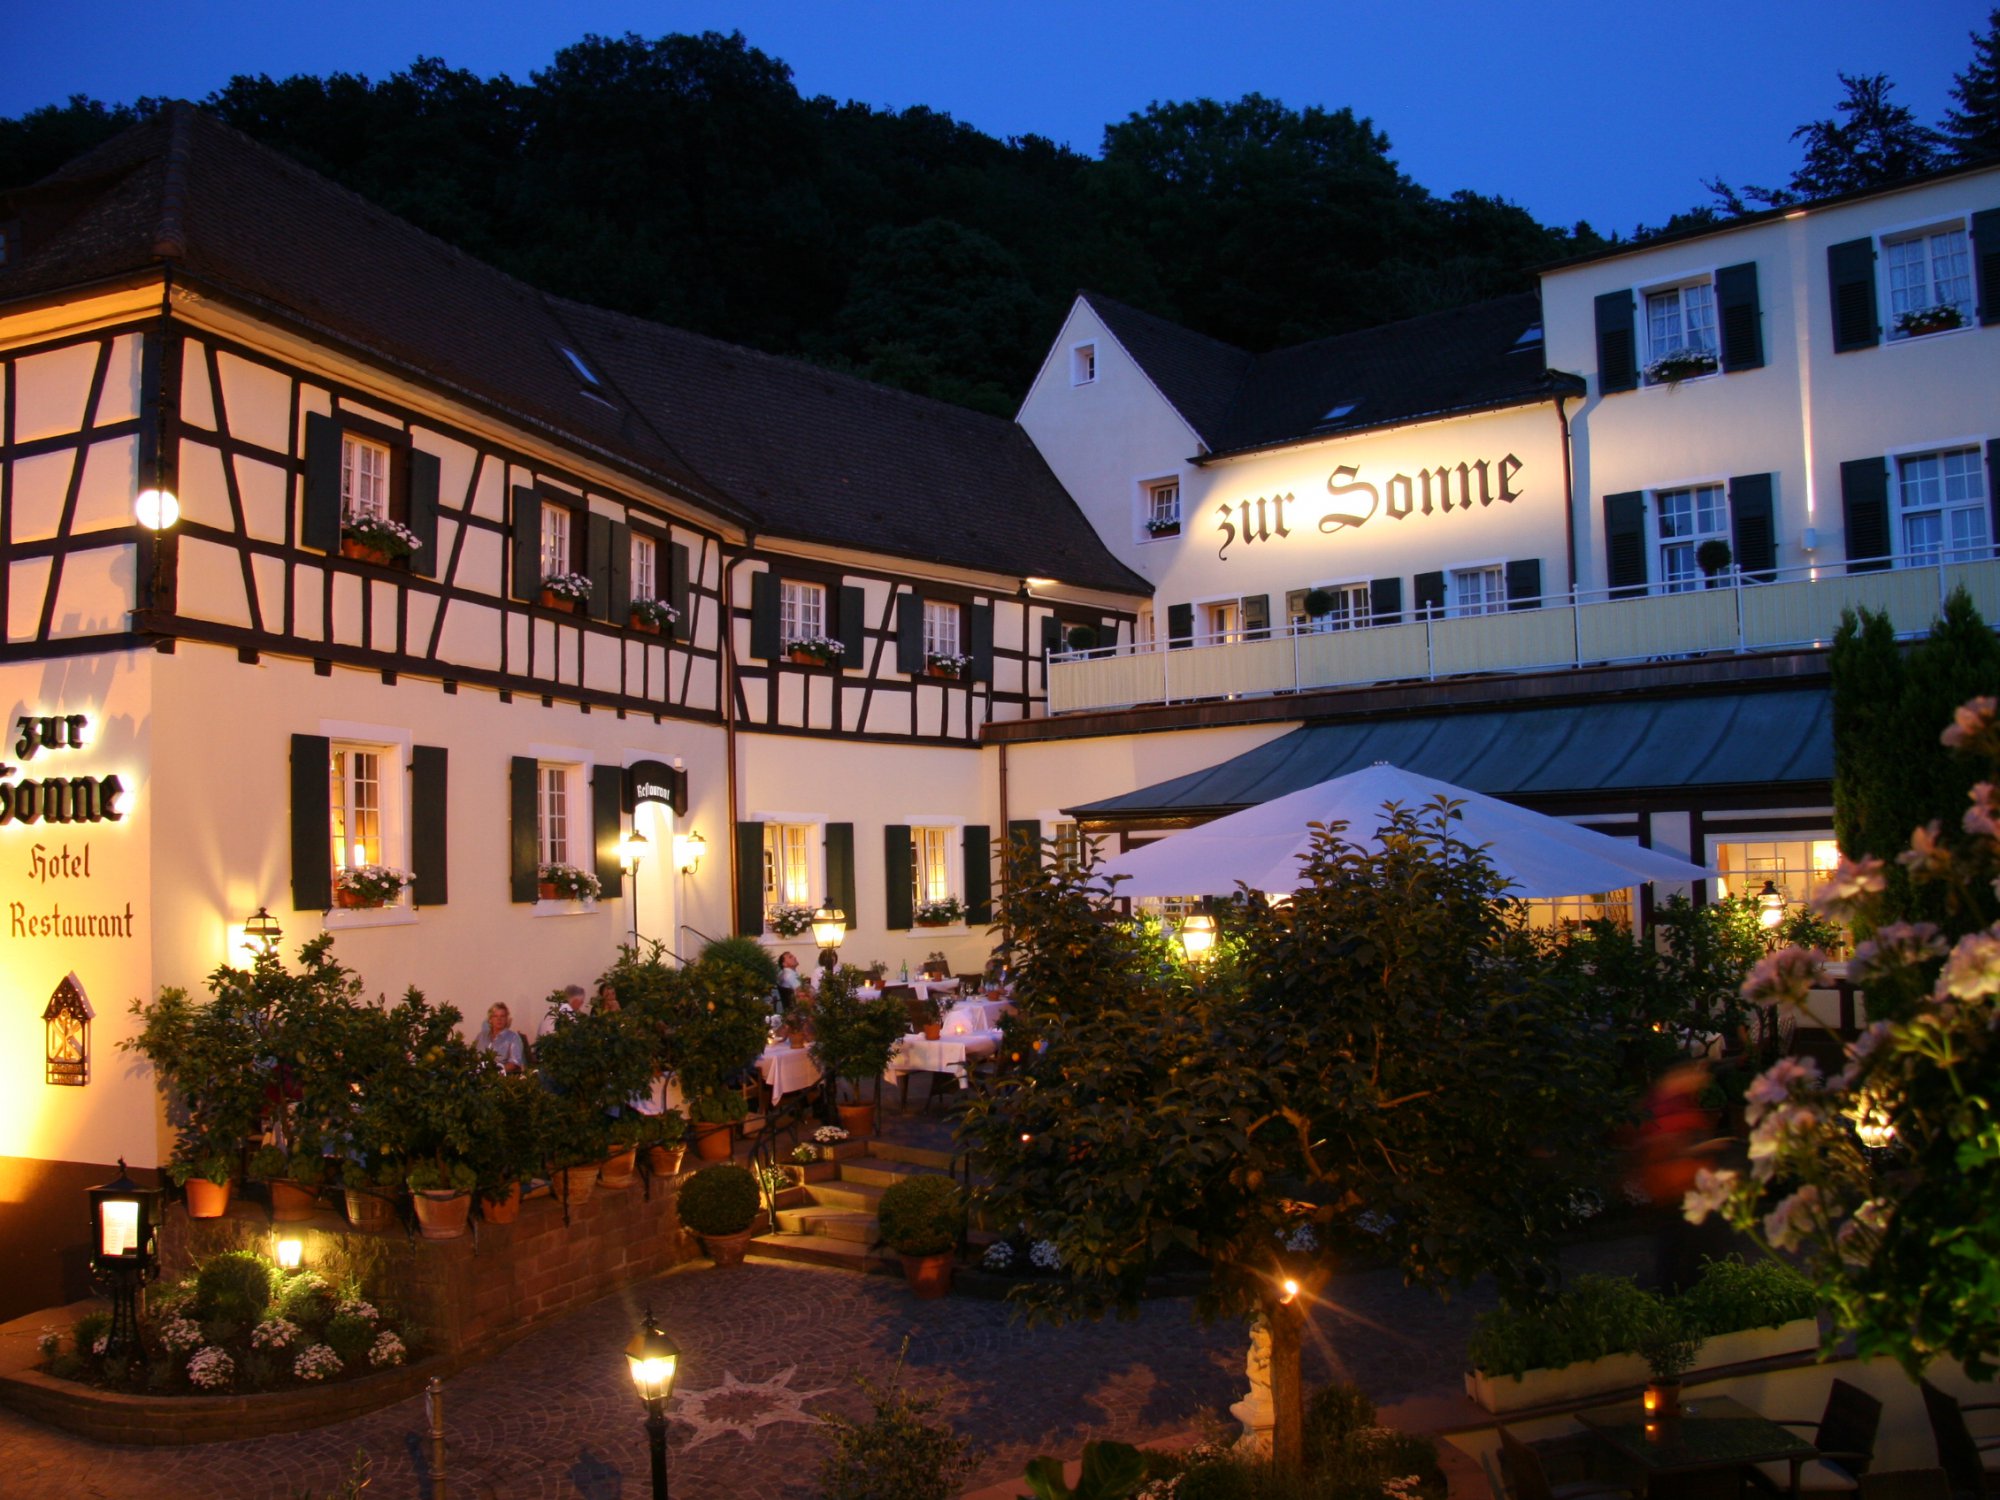 Romantikhotel zur Sonne in Badenweiler